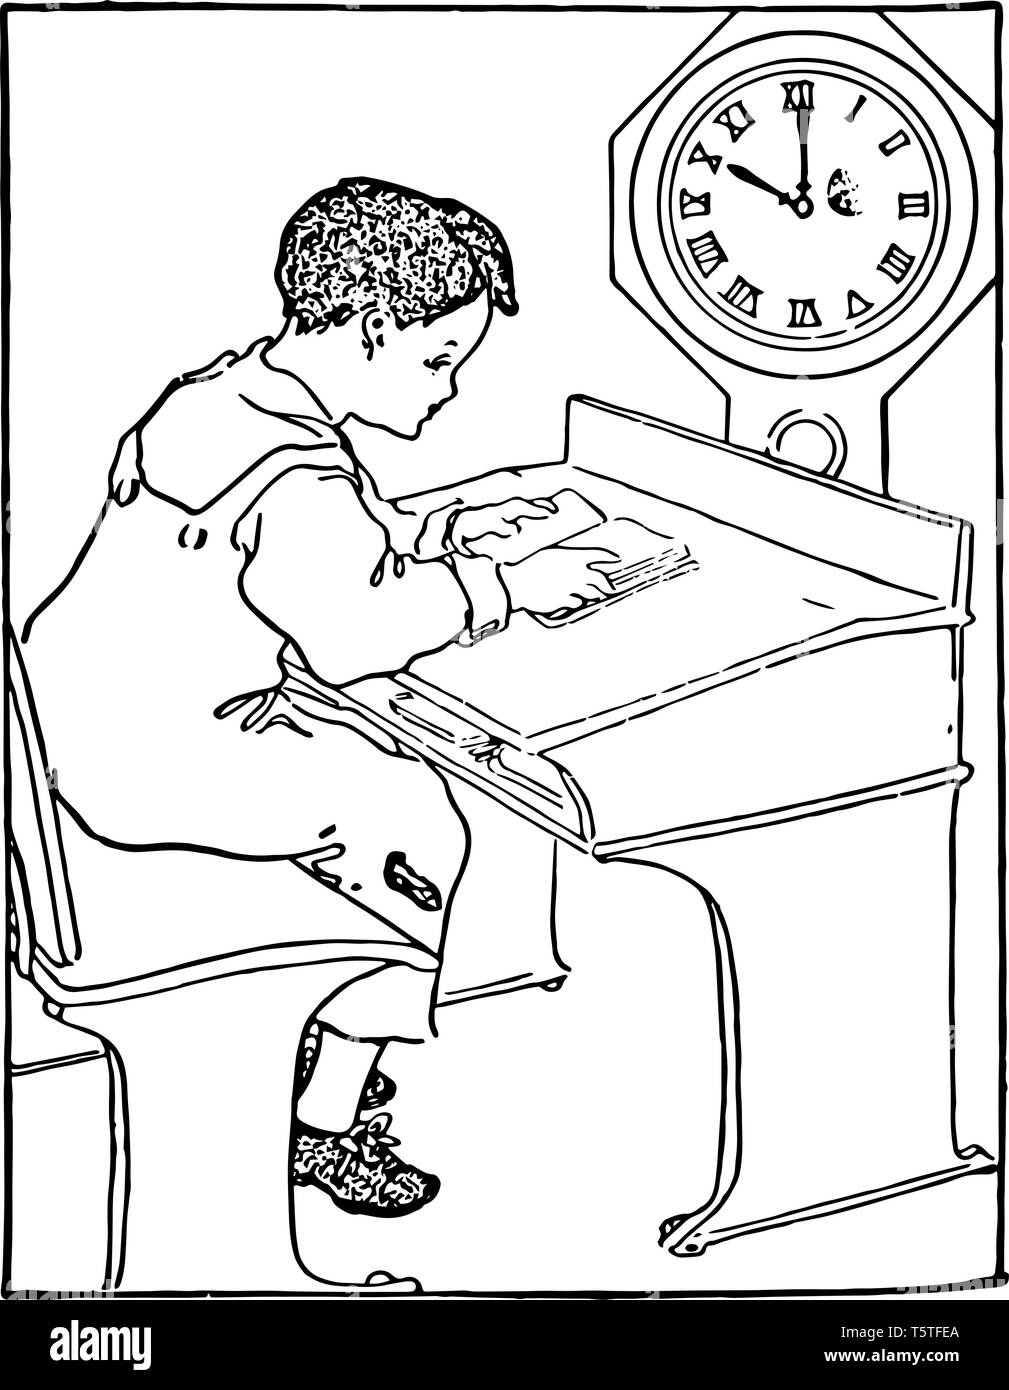 Questa figura mostra un bambino seduto sul banco la lettura di un libro di scuola. Tempo mostrato nella watch è 10:00, vintage disegno della linea o incisione illustratio Illustrazione Vettoriale